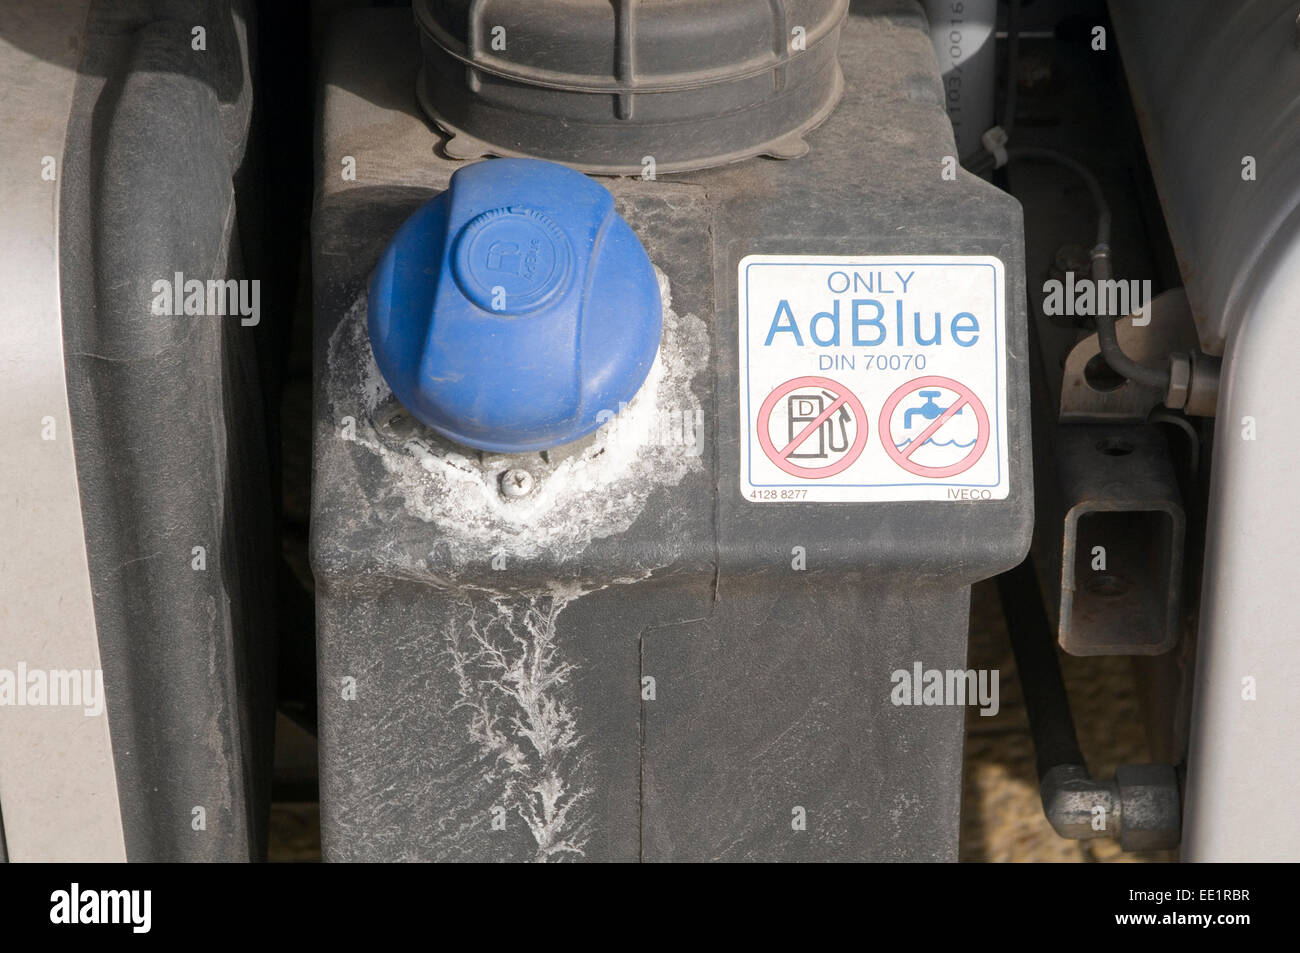 Ad blue Diesel Tank selektive katalytische Reduktion Umweltverschmutzung  niedriger NOx Emissionen Stickstoffoxide Reduktion LKW Fahrzeug ve  Stockfotografie - Alamy